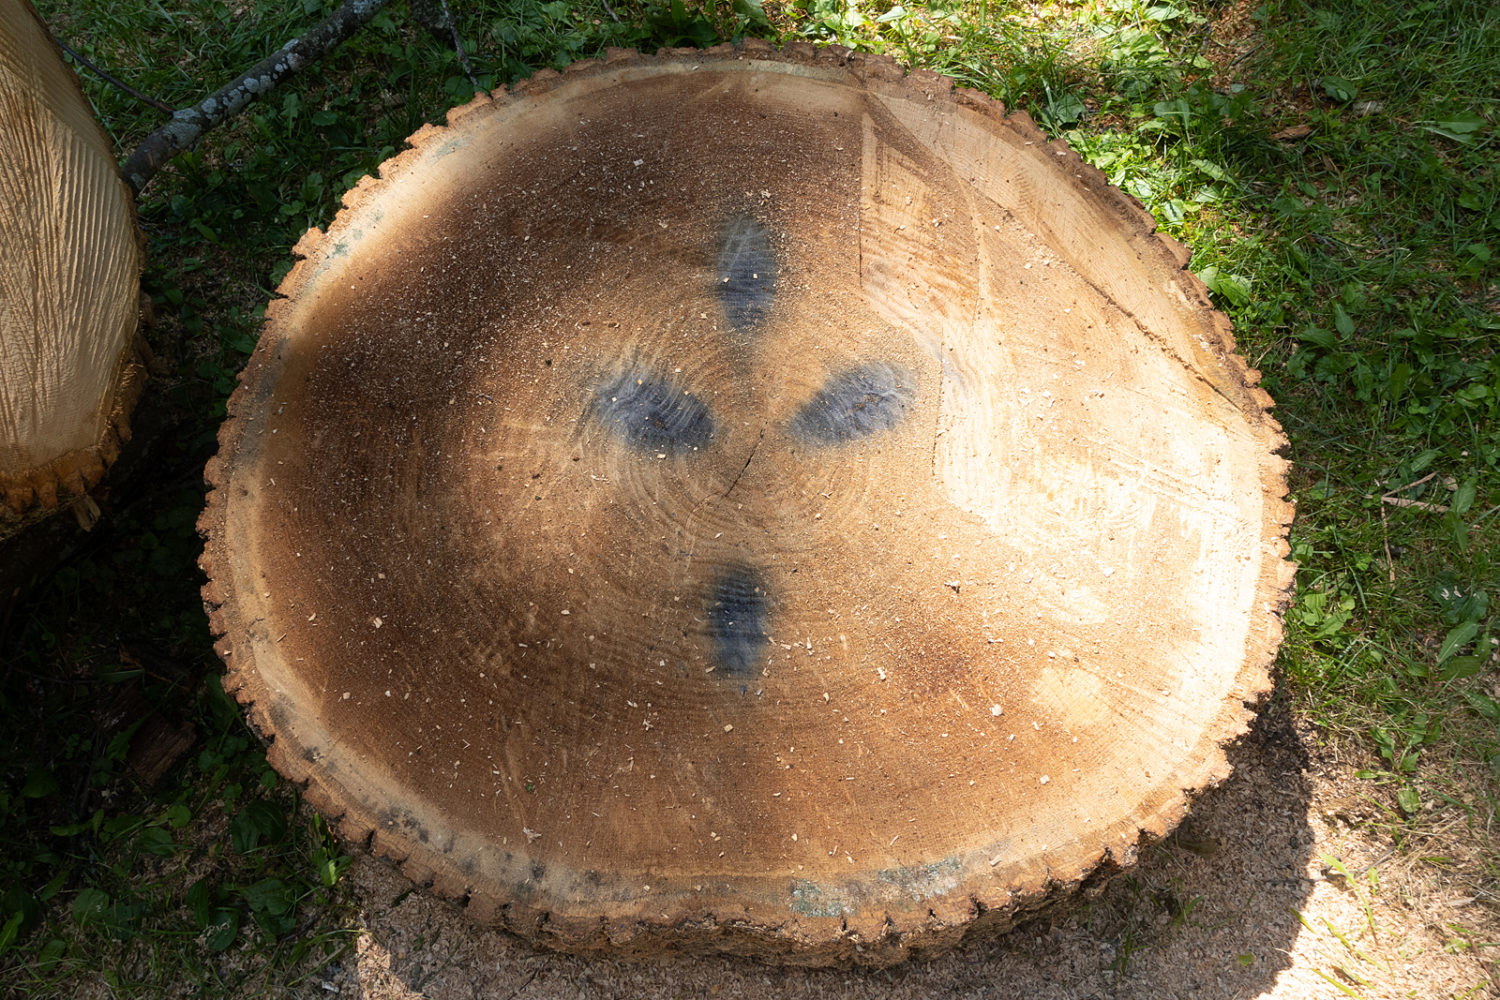 Oak tree next door with metal stains